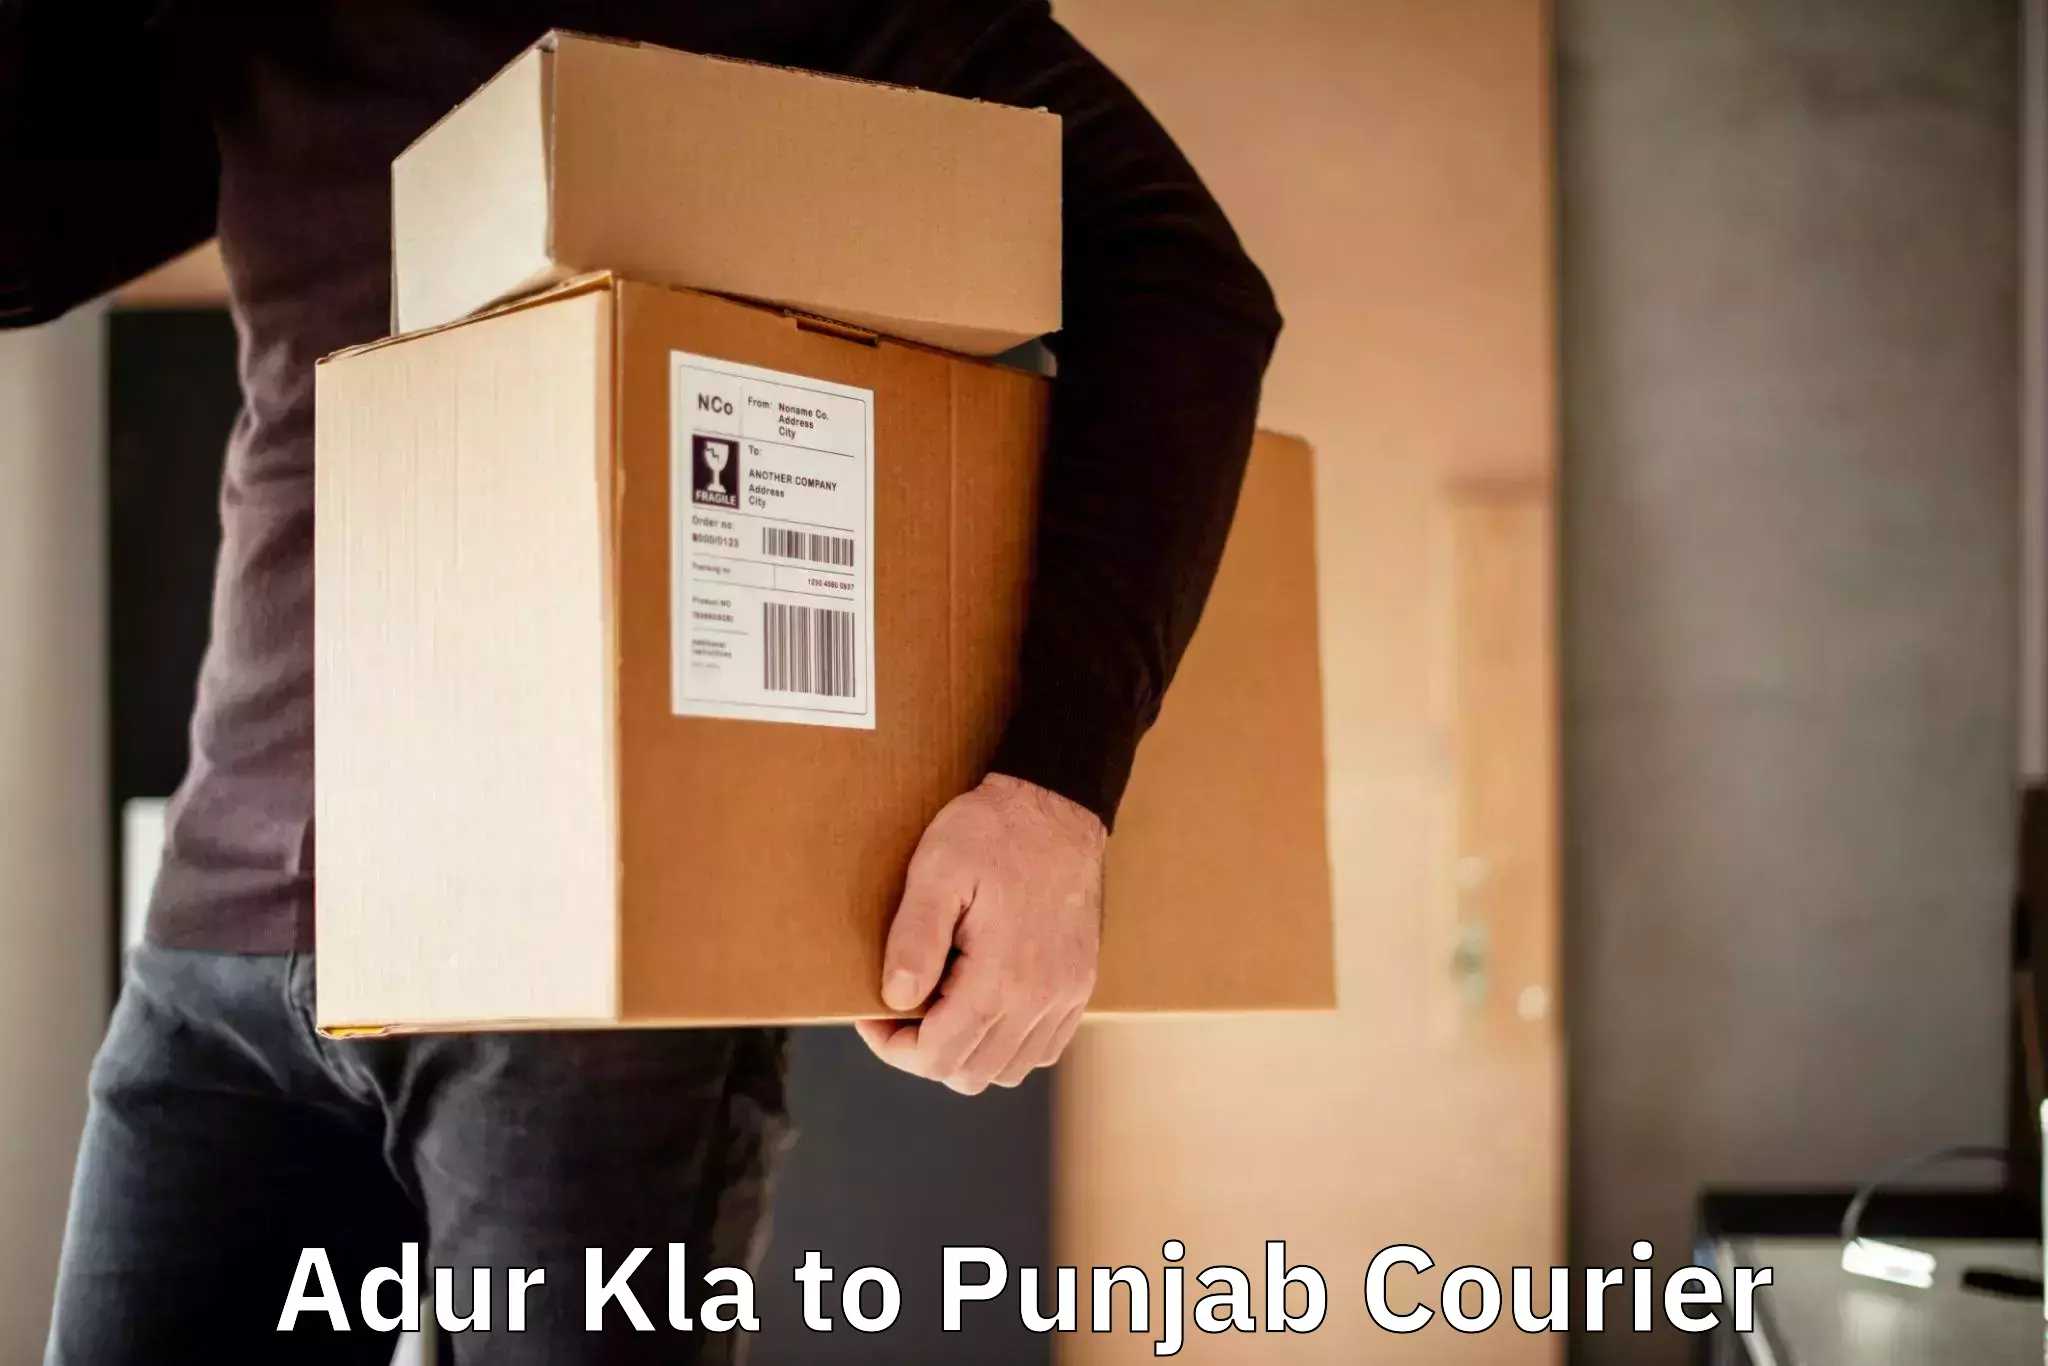 Nationwide parcel services Adur Kla to Batala